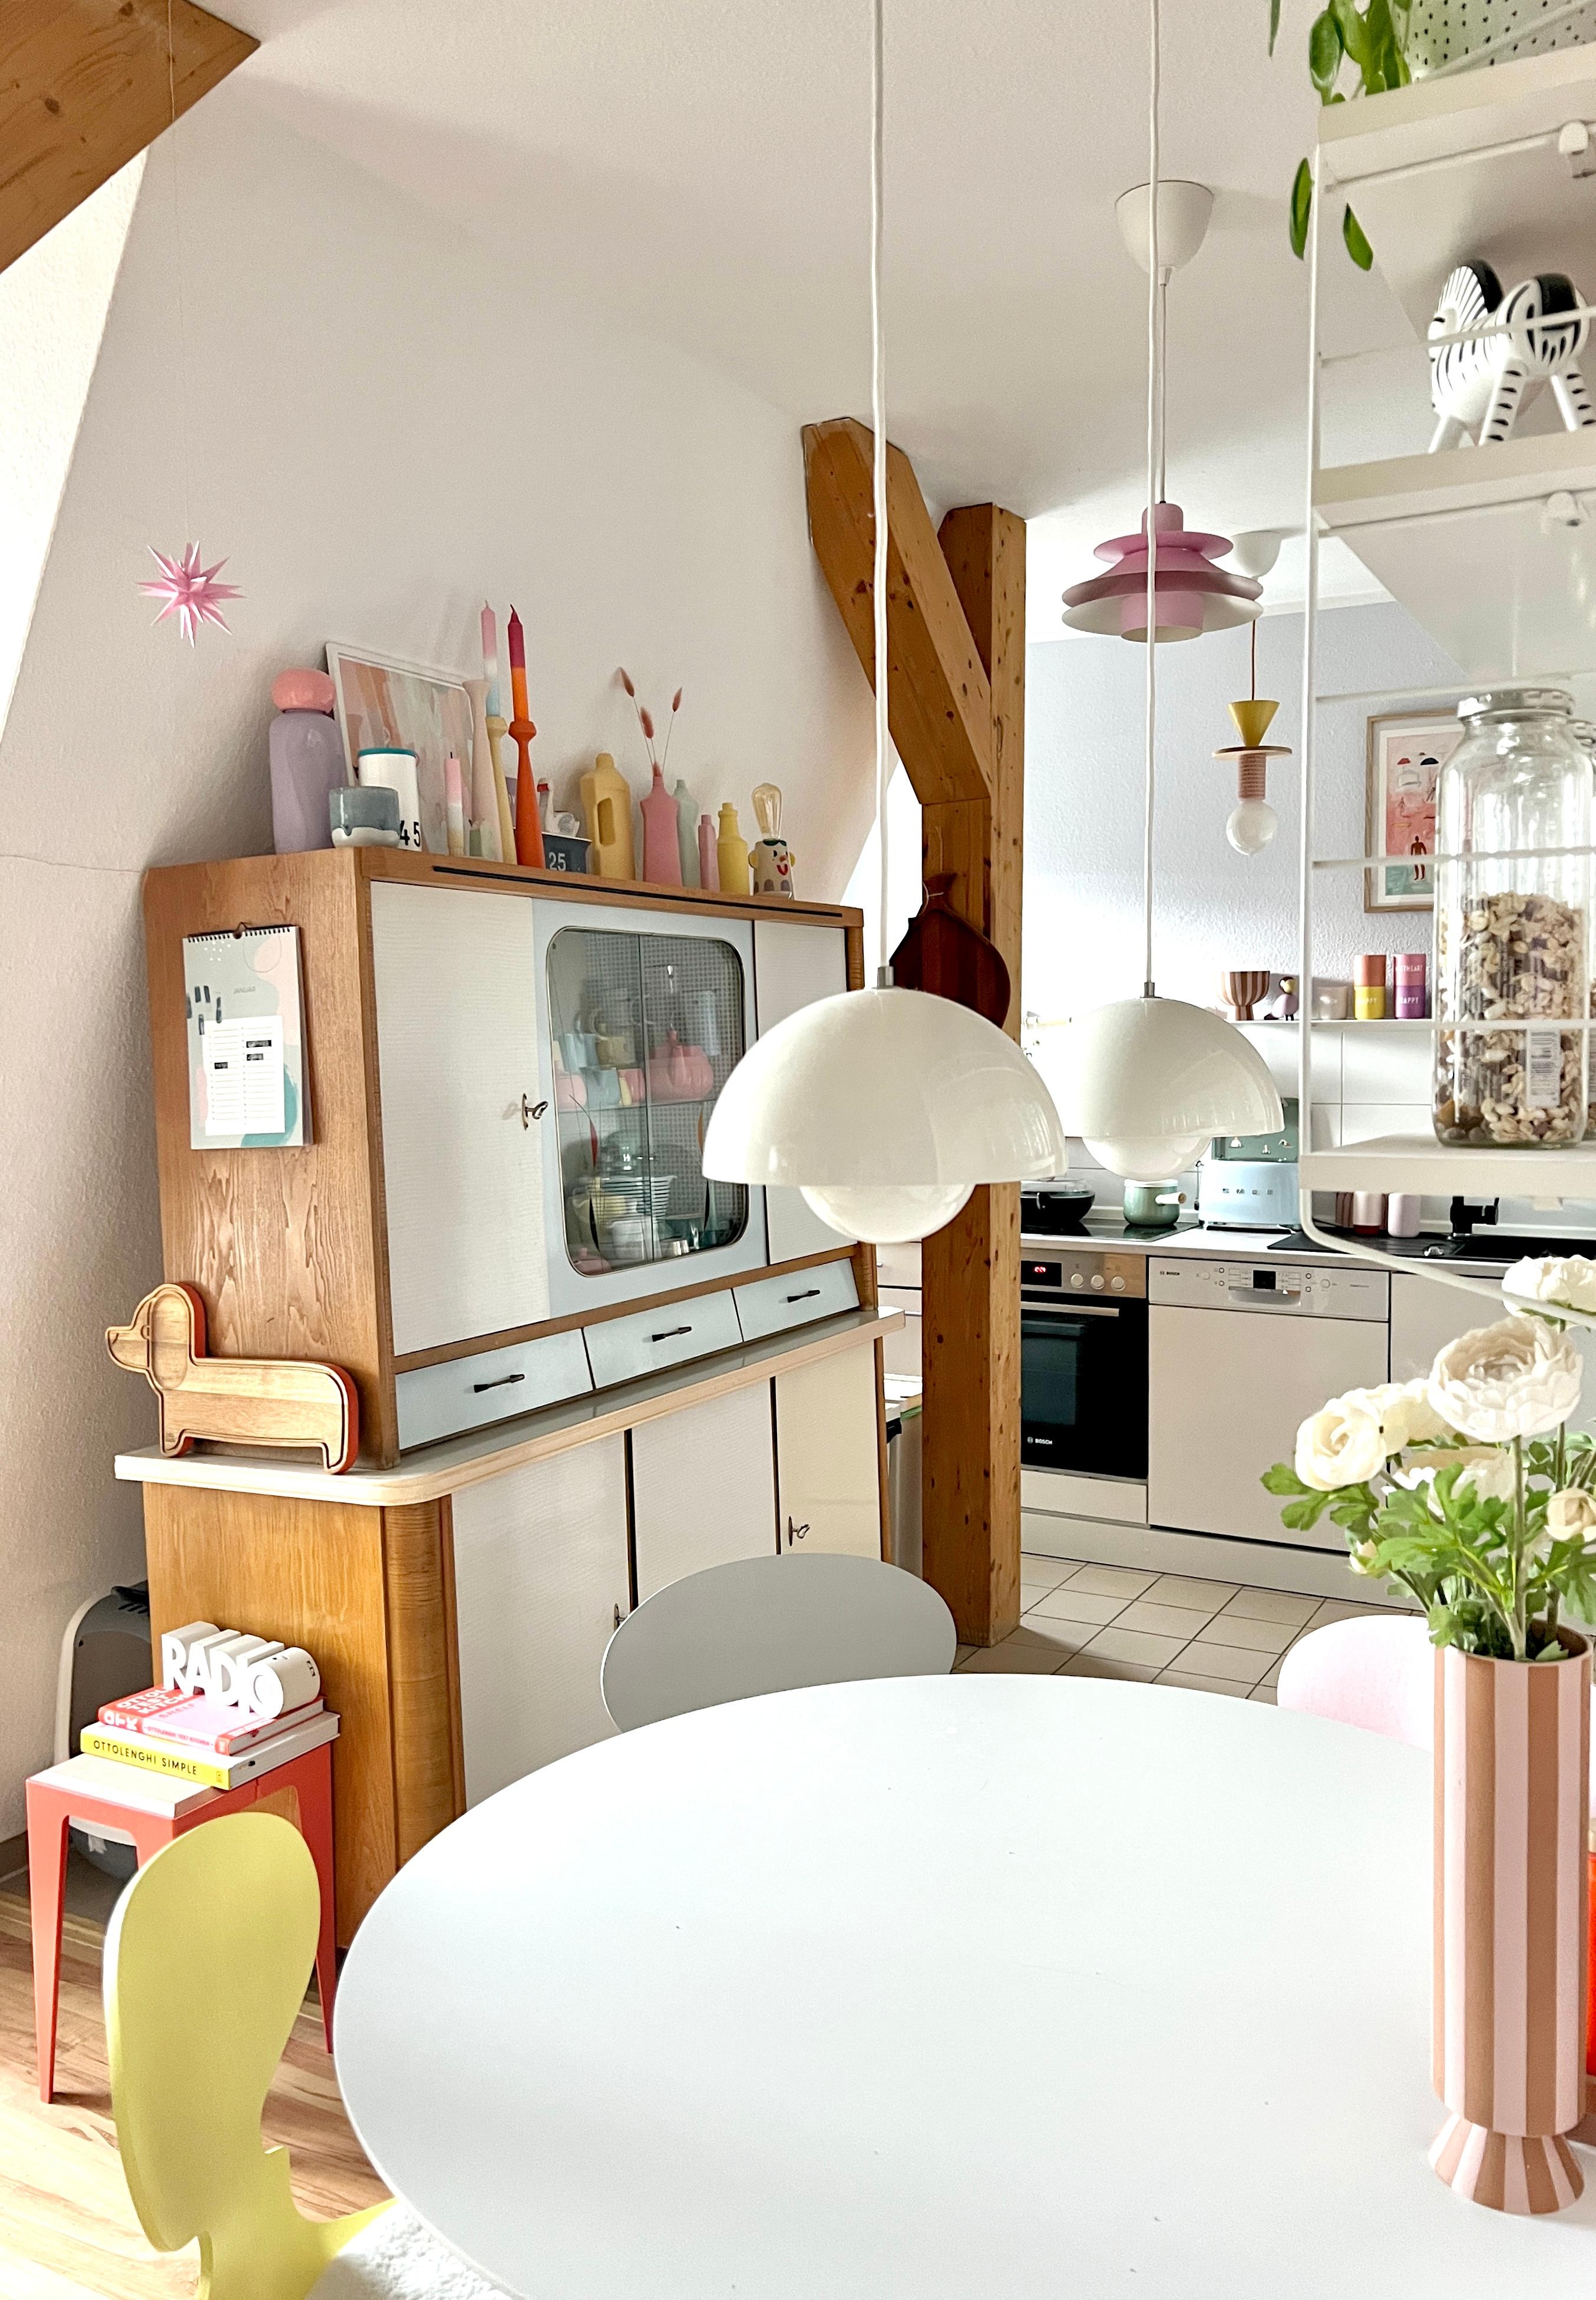 #interior #interiordesign #couchliebt #küche #pastell #50s #60s #flowerpot 